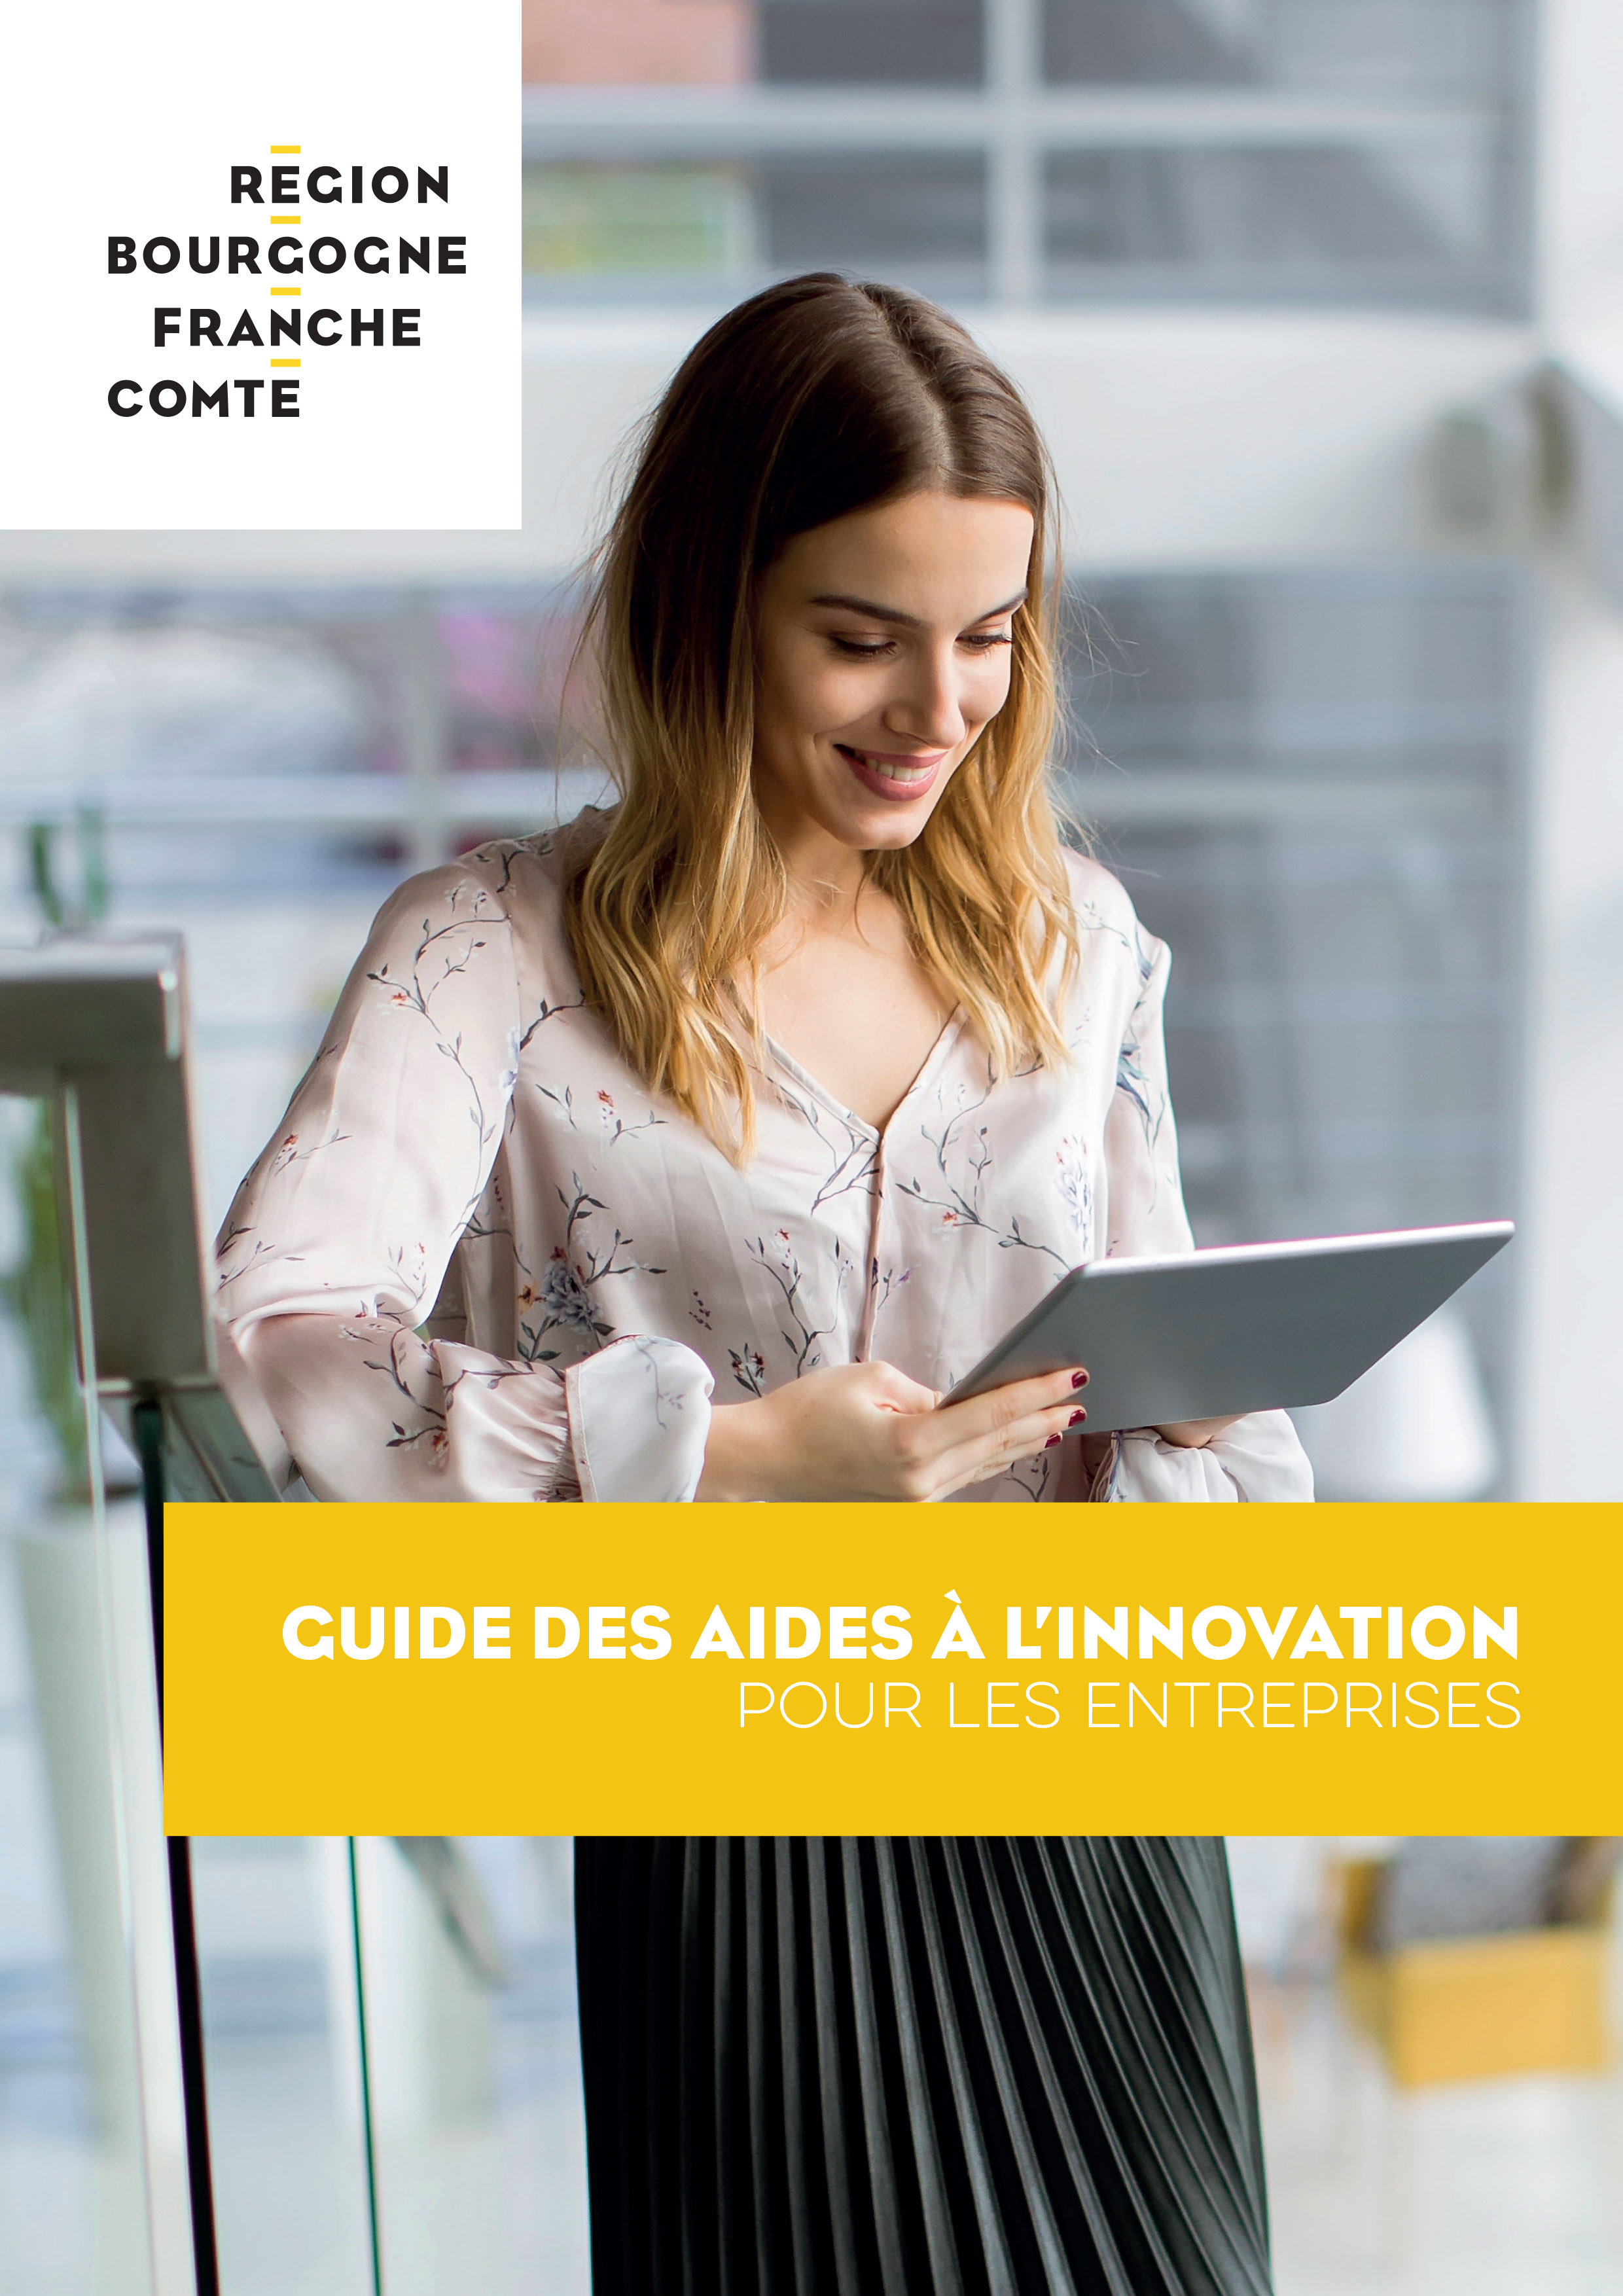 Guide des aides à l’innovation pour les entreprises